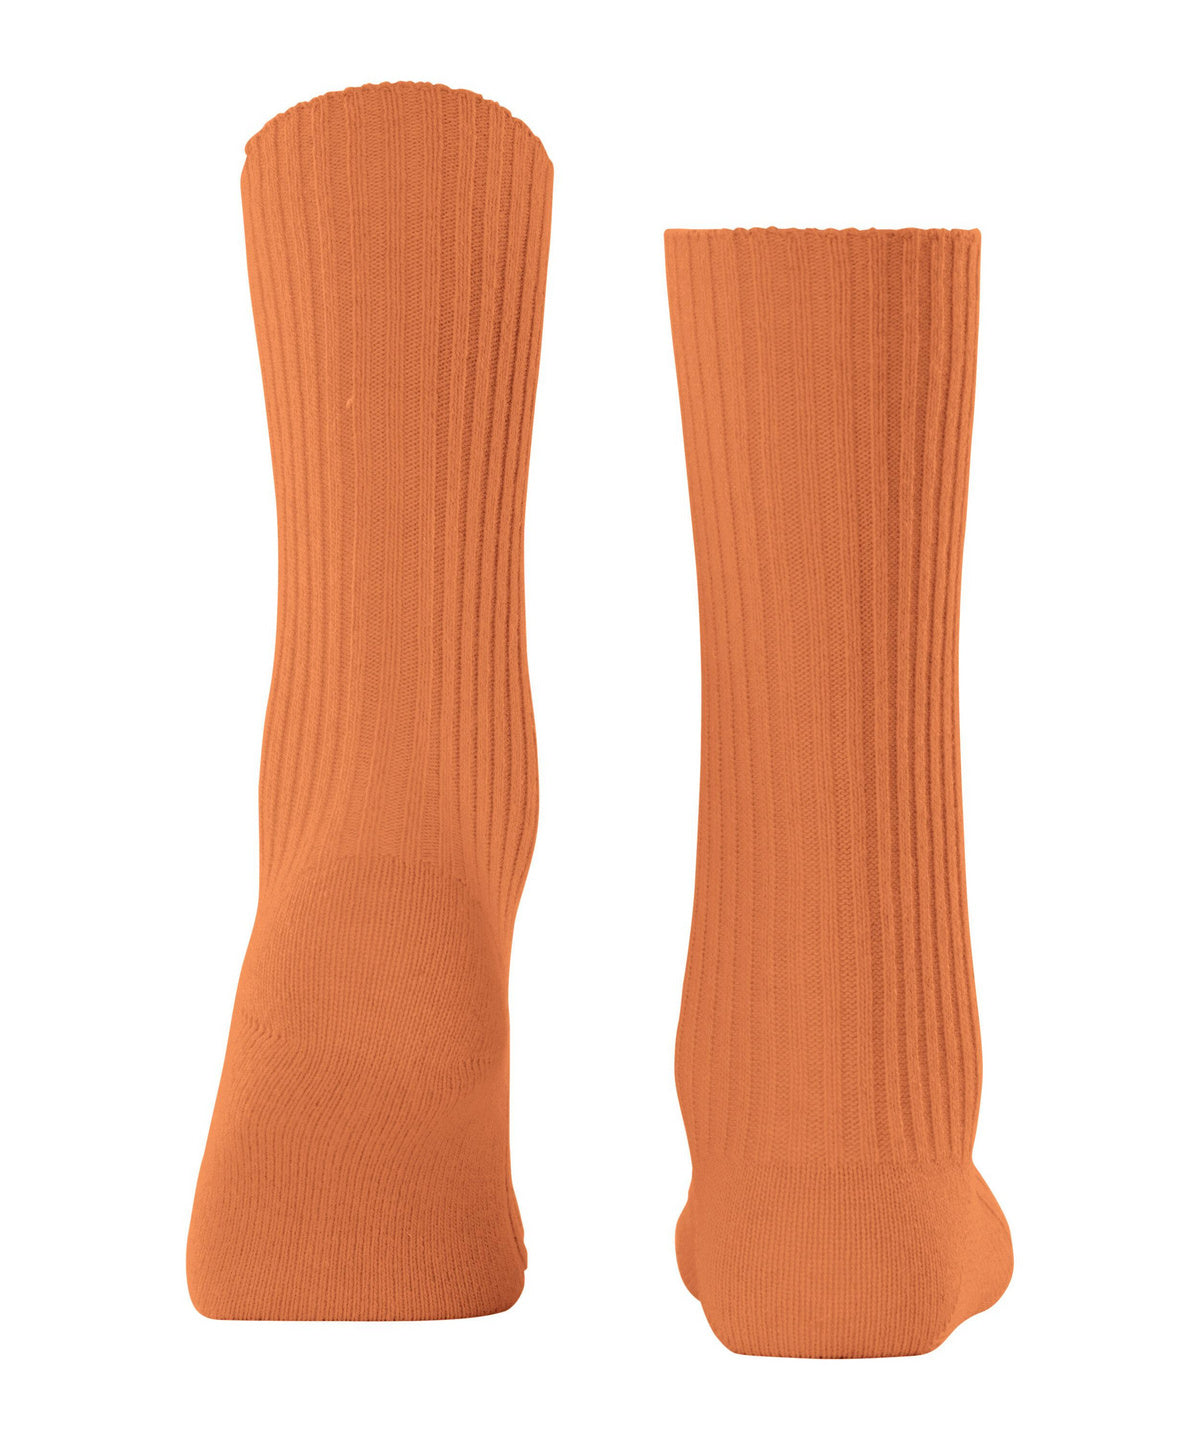 FALKE Cosy Wool Boot Women Socks - Tandoori